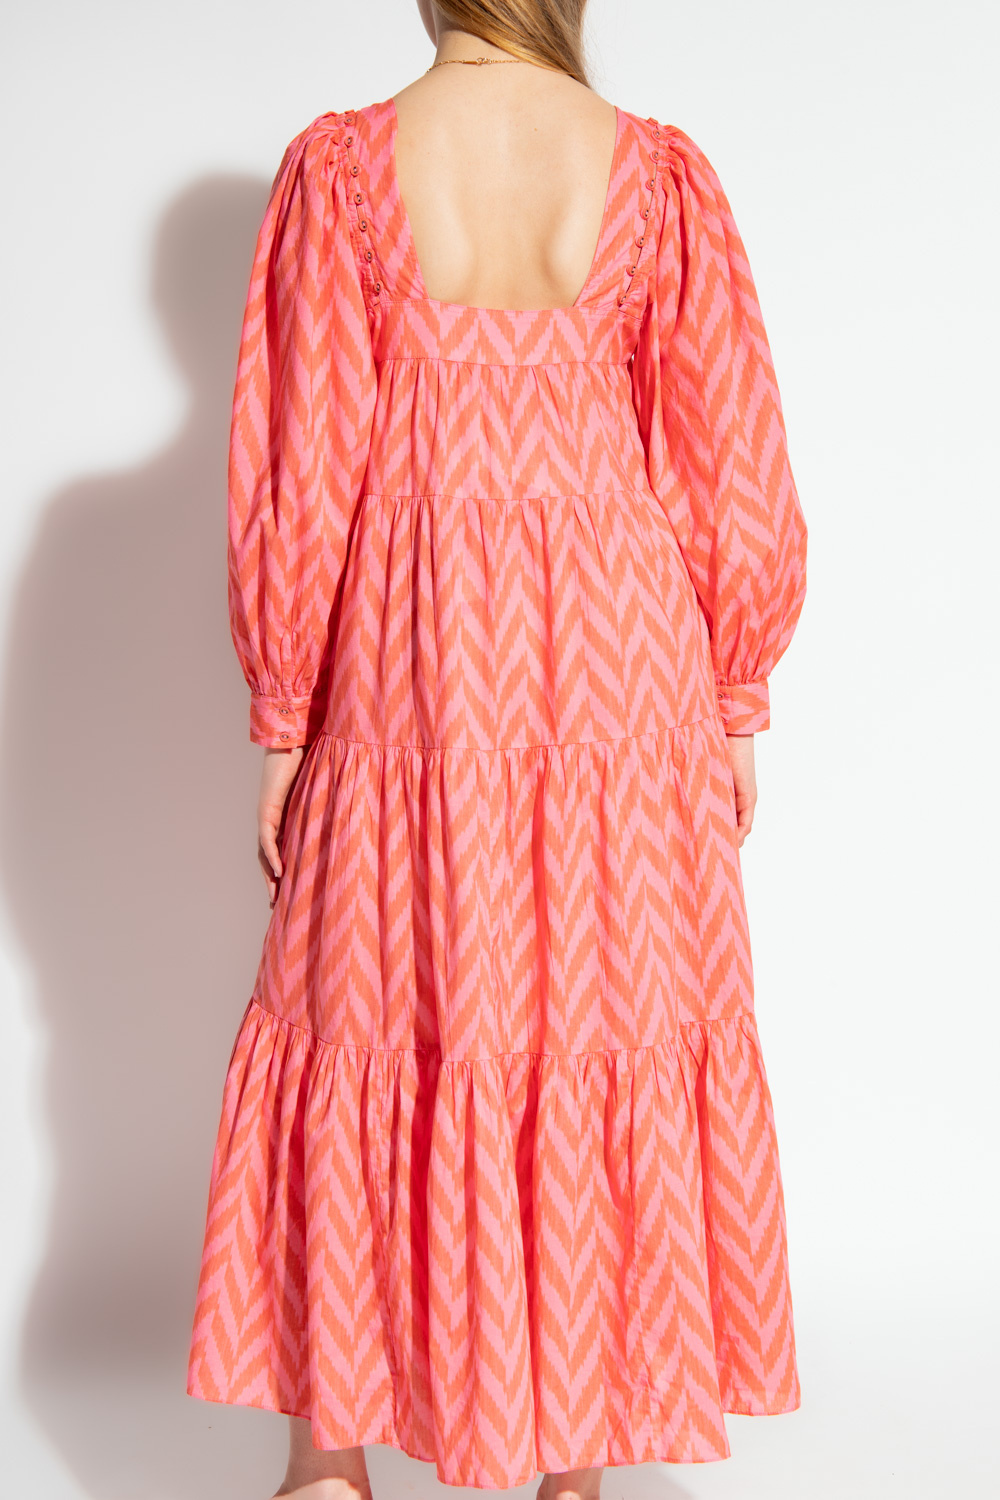 Ulla Johnson ‘Georgina’ patterned dress